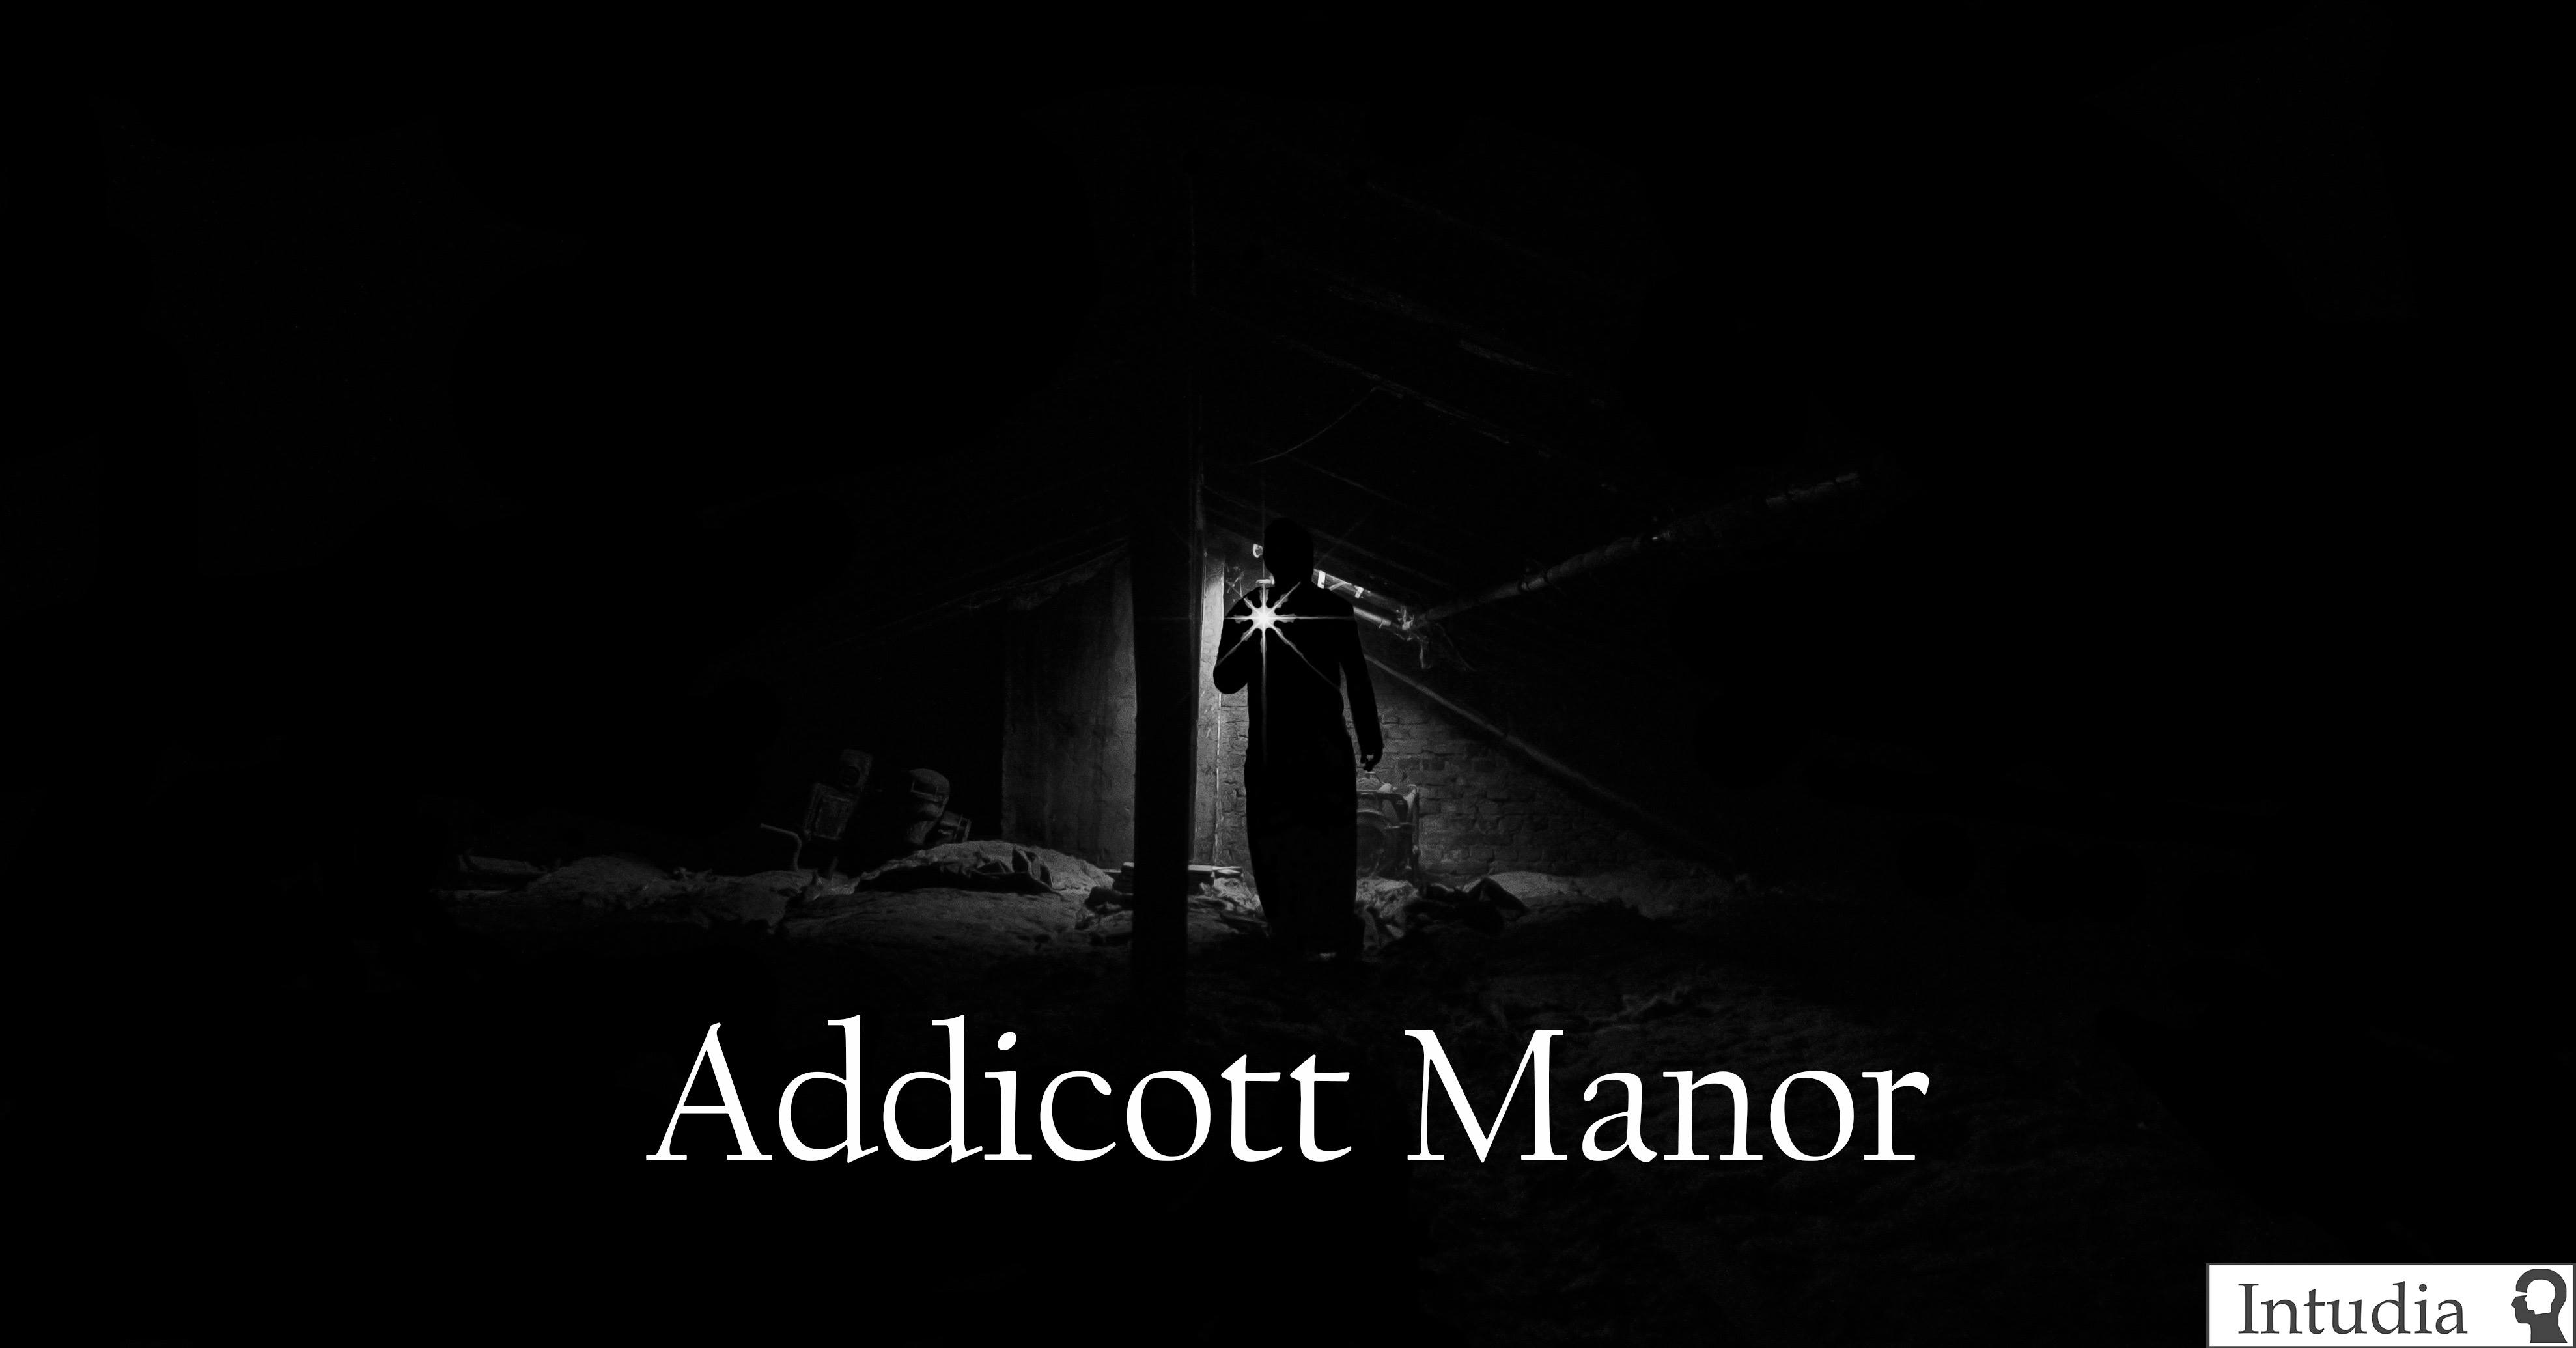 Cover art for The Addicott Manor